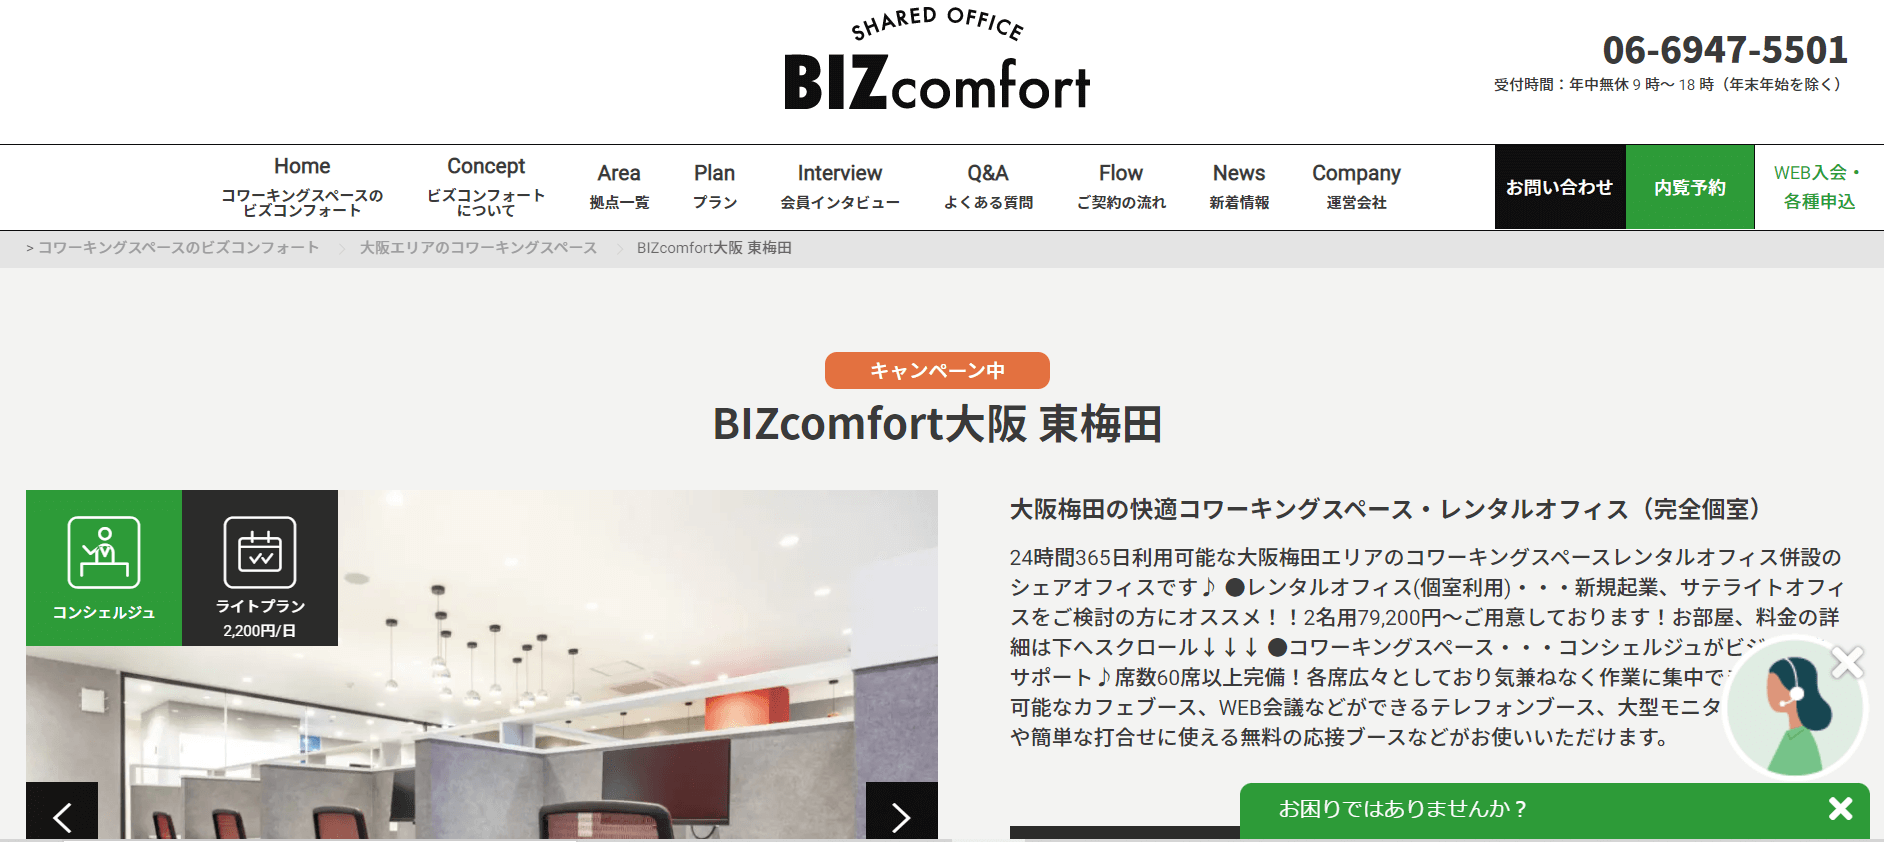 梅田の人気・おすすめの格安コワーキングスペースBIZcomfort大阪 東梅田